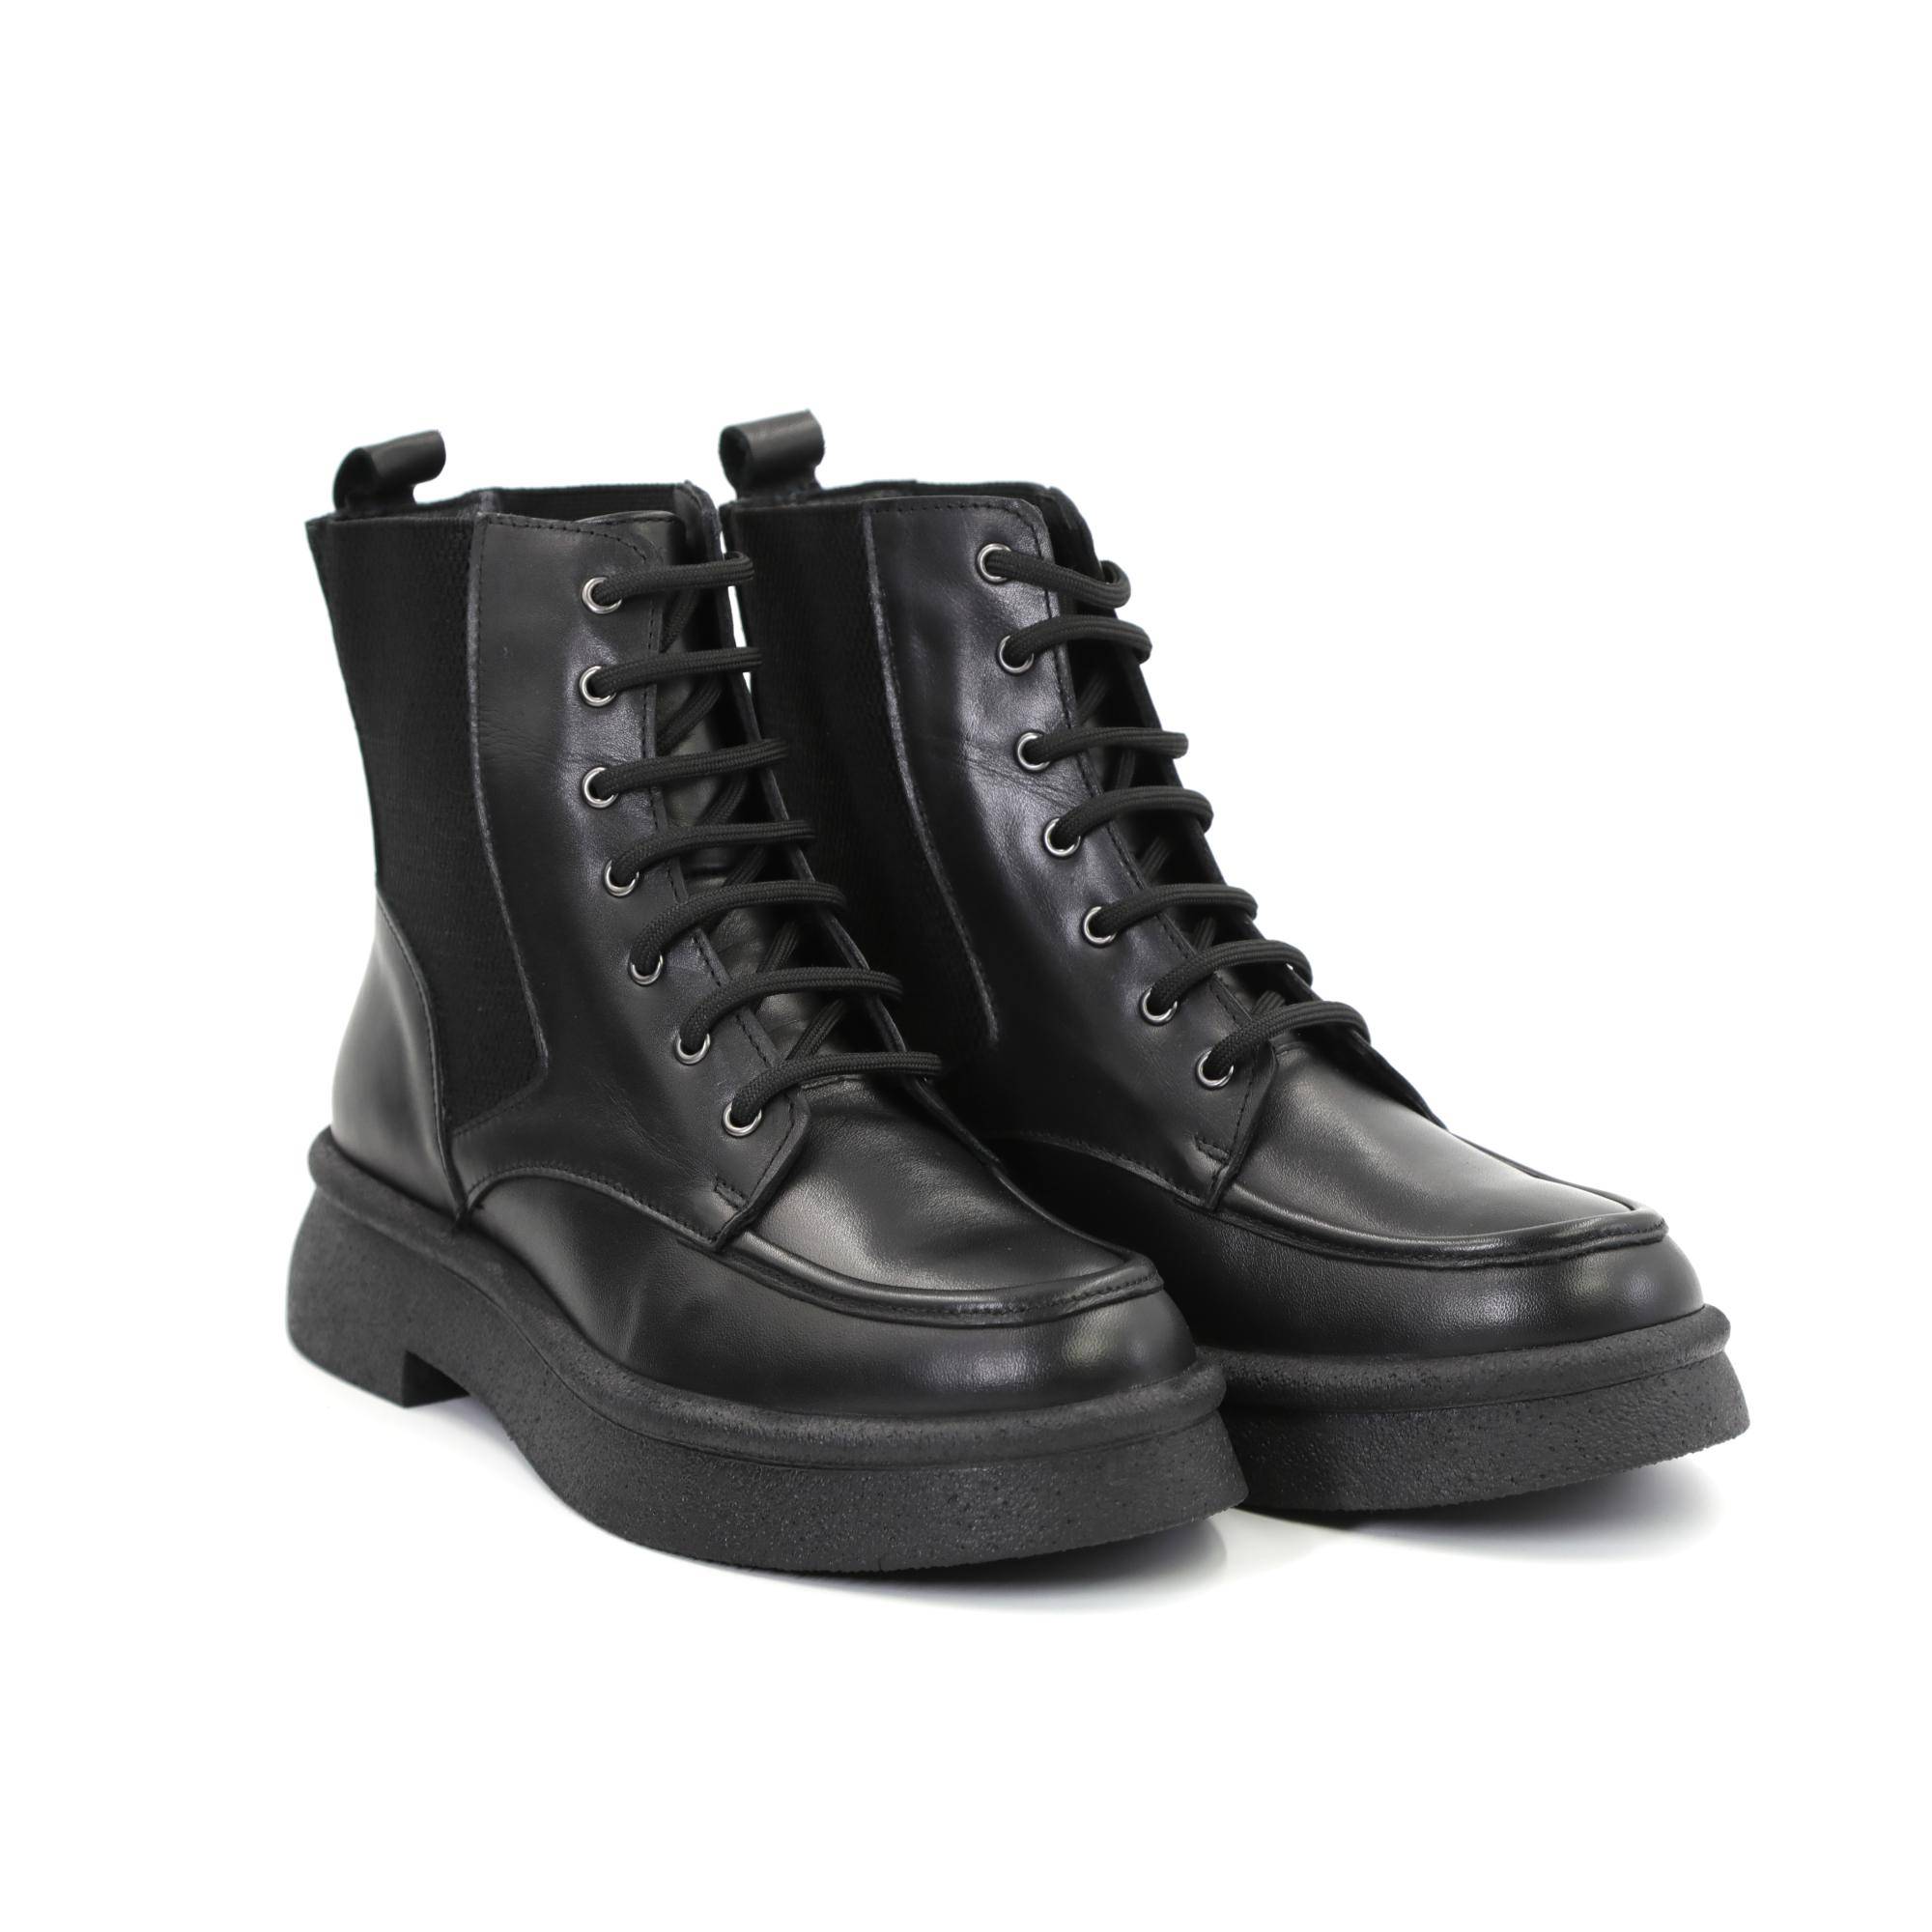 Женские высокие ботинки Clarks, черные, цвет черный, размер 41 - фото 1